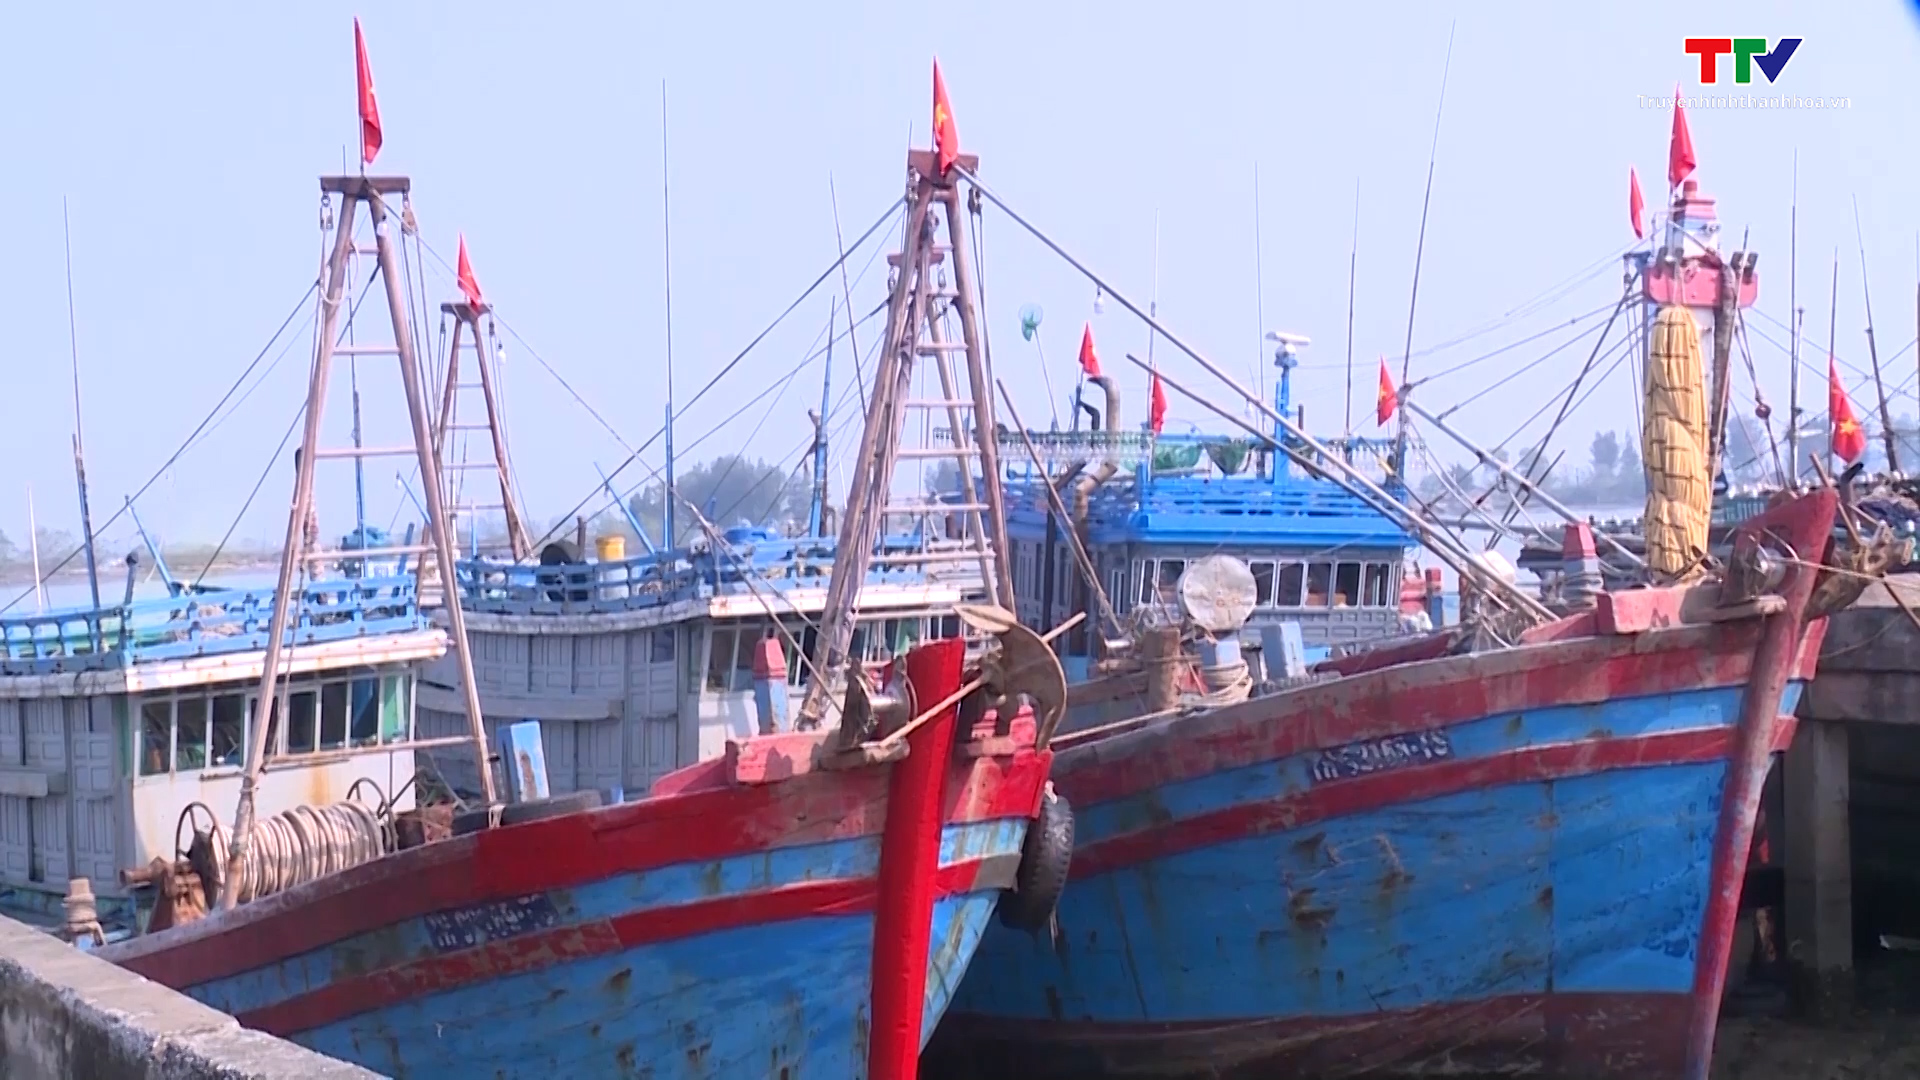 Trung Quốc đơn phương thông báo tạm ngừng đánh cá là không có giá trị - Ảnh 2.